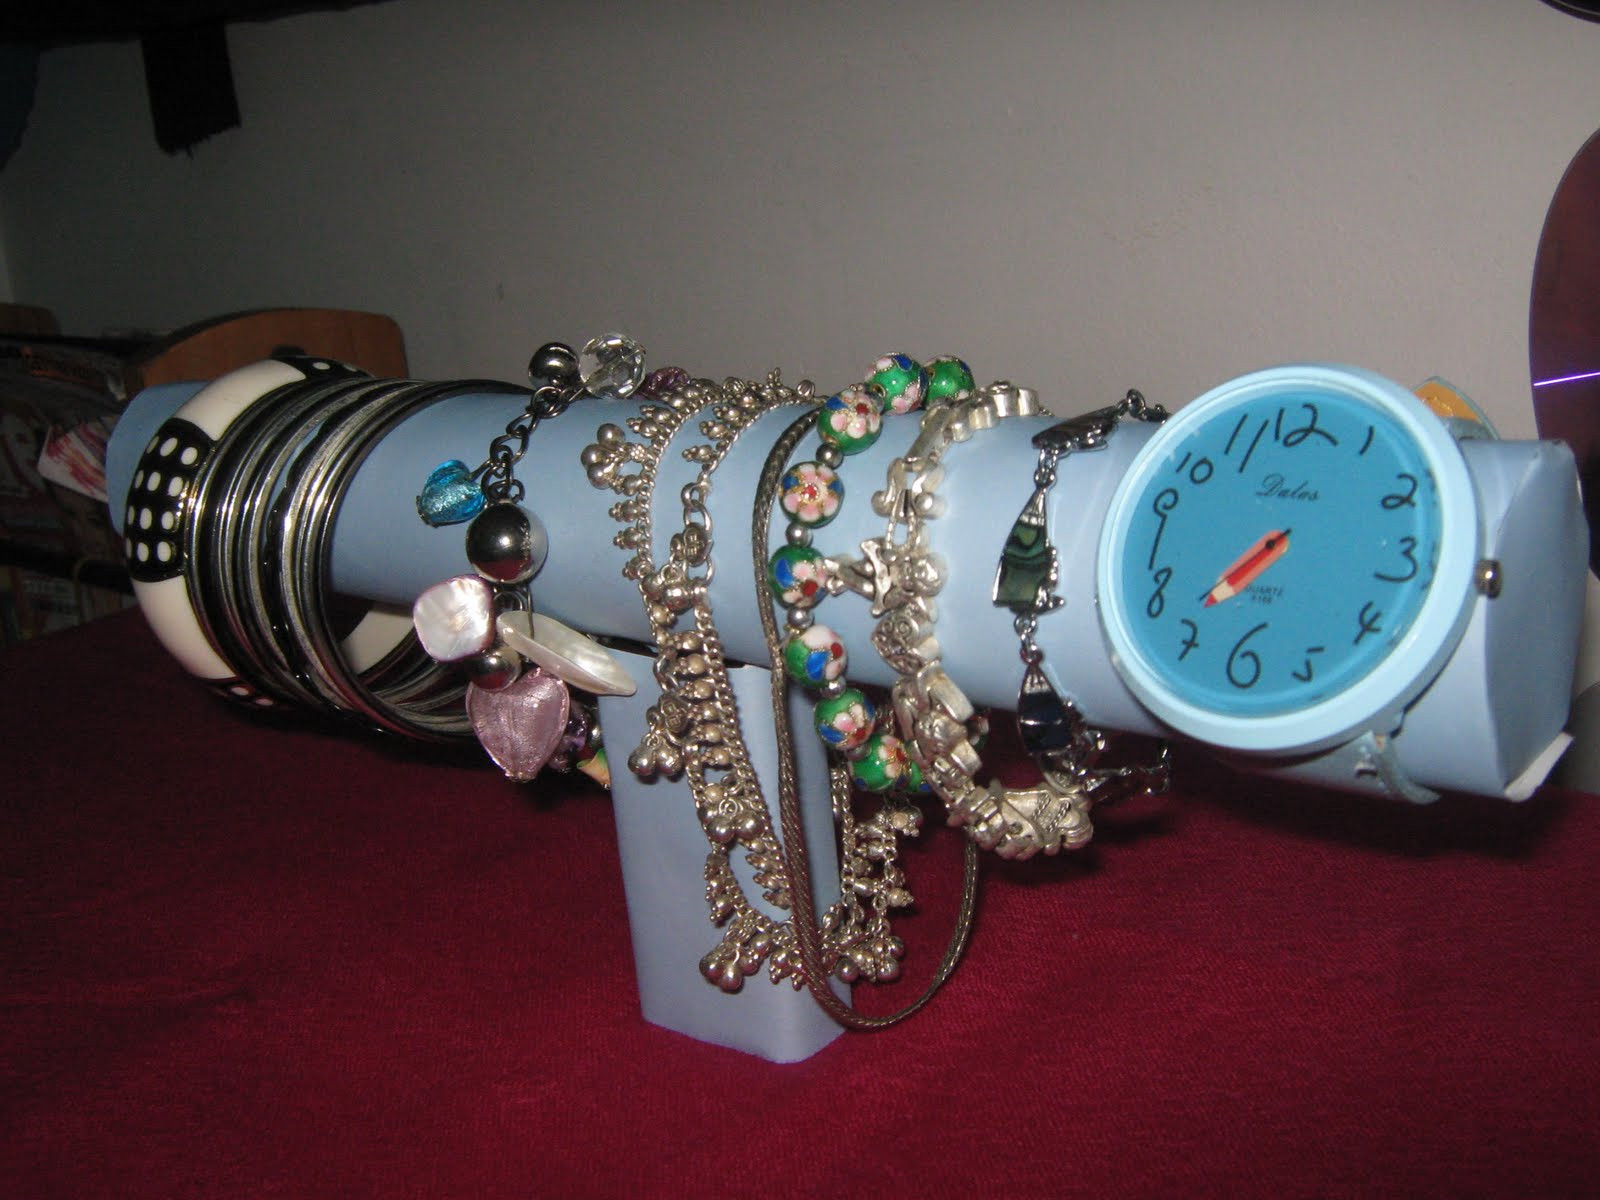 Best ideas about DIY Bracelet Holder
. Save or Pin Fashion to DIY for DIY bracelet holder Now.